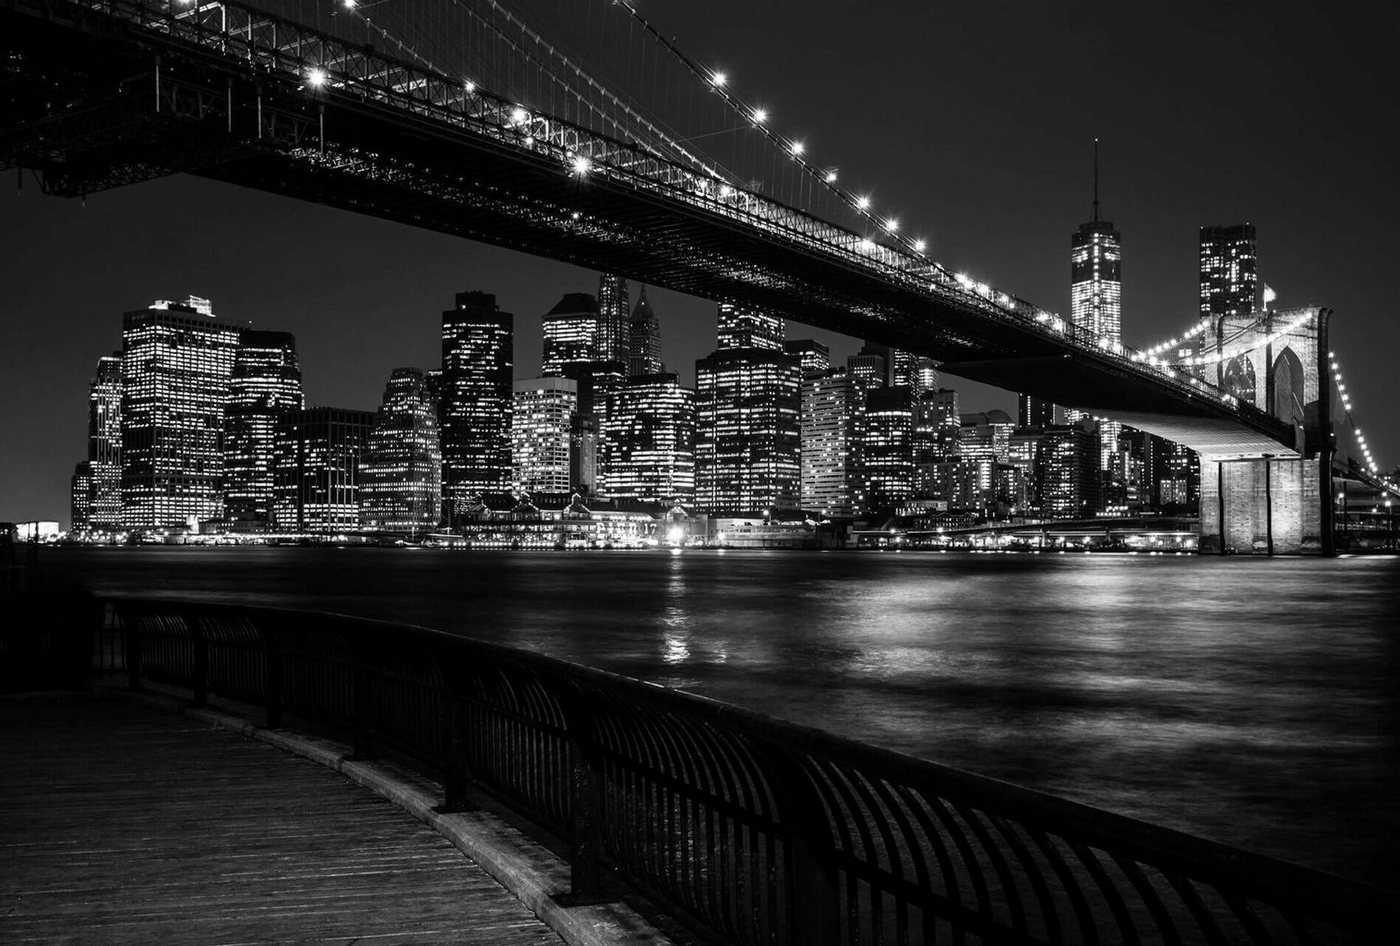 KUNSTLOFT Vliestapete Brooklyn Bridge by Night 4x2.7 m, leicht glänzend, lichtbeständige Design Tapete von KUNSTLOFT